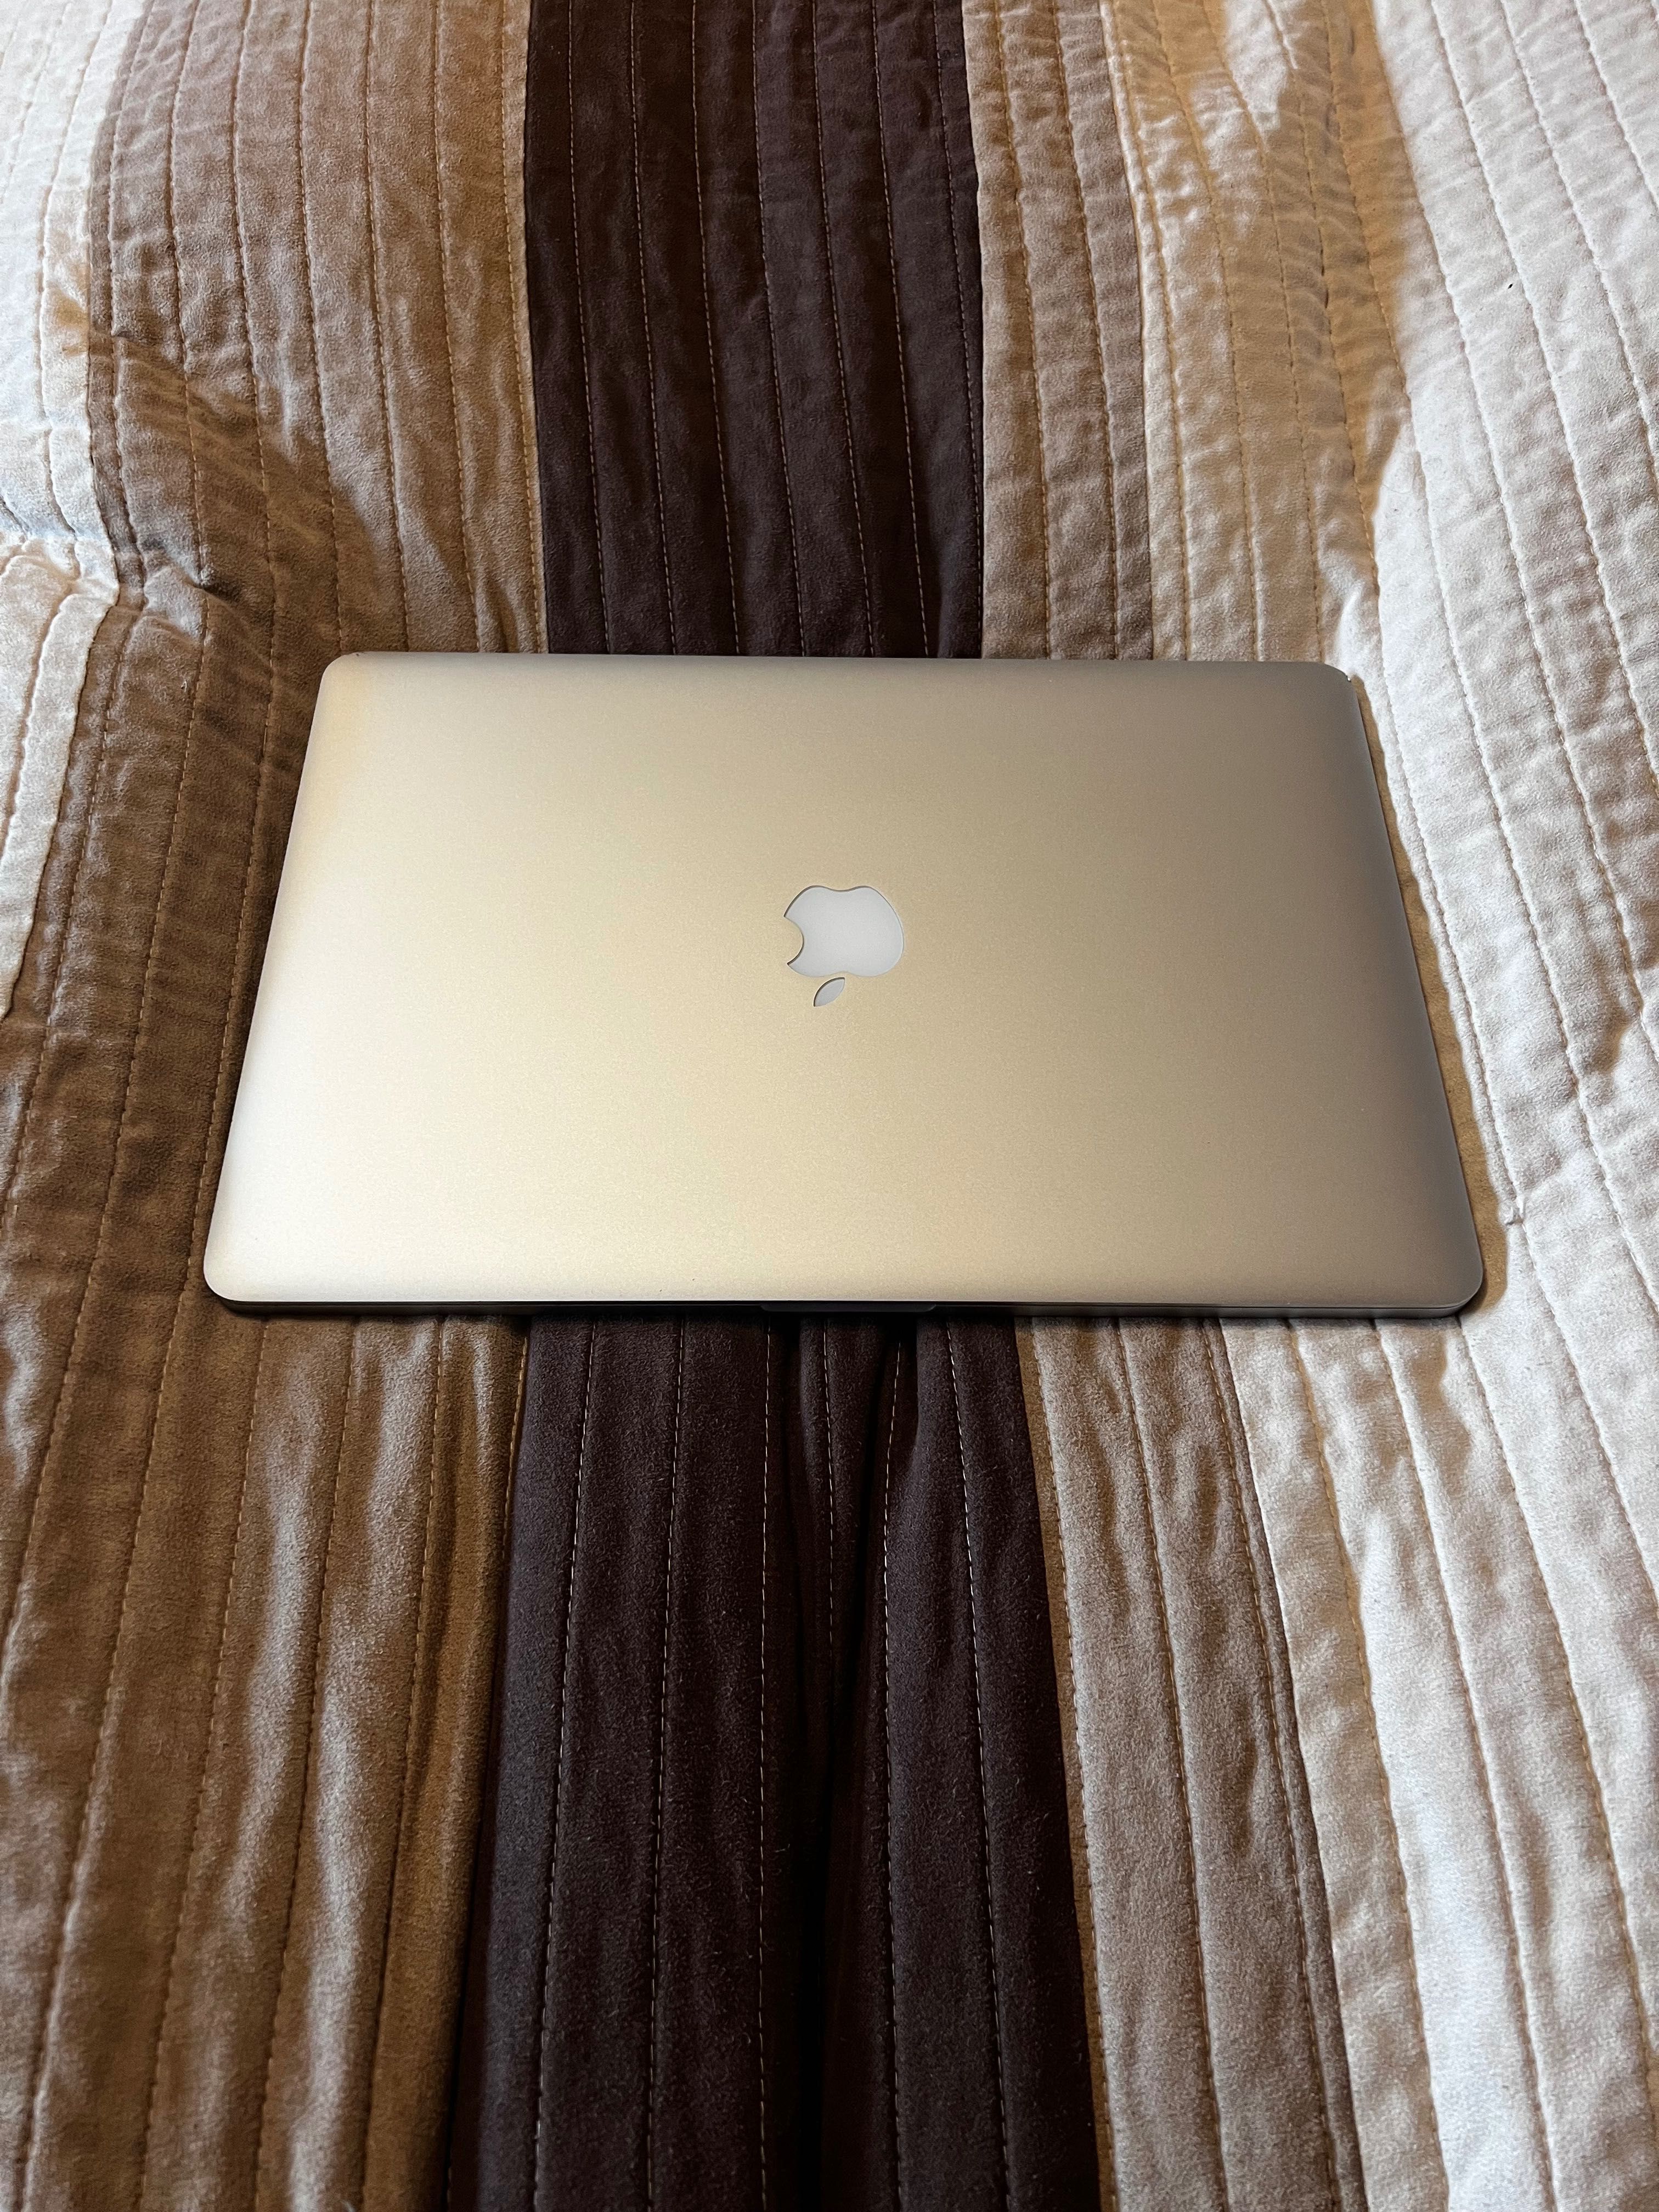 Apple MacBook Pro 15 inch